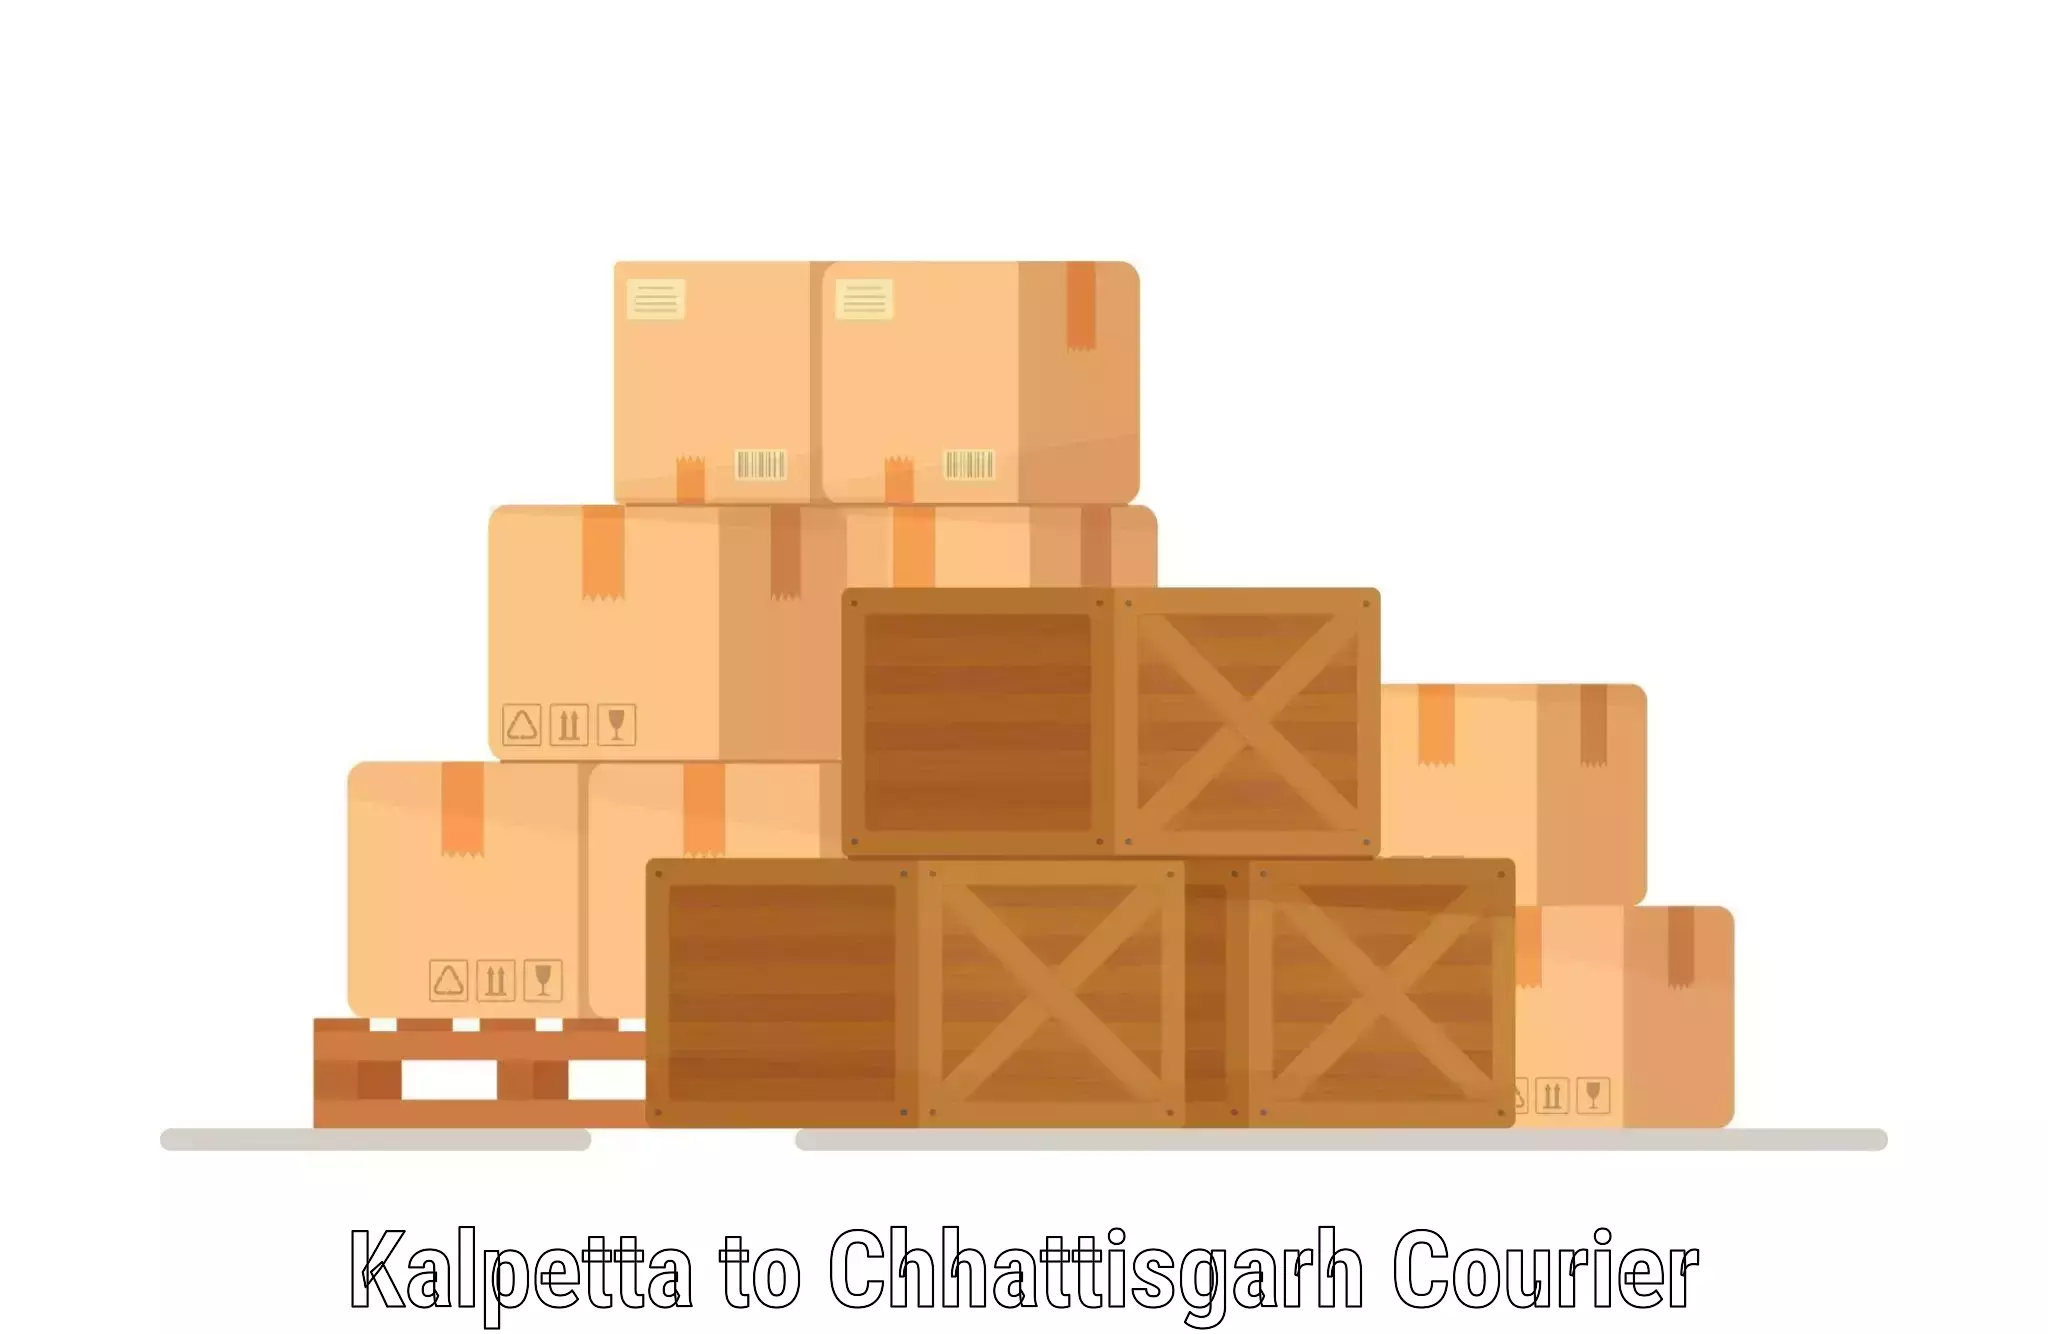 Sustainable courier practices Kalpetta to Chhattisgarh